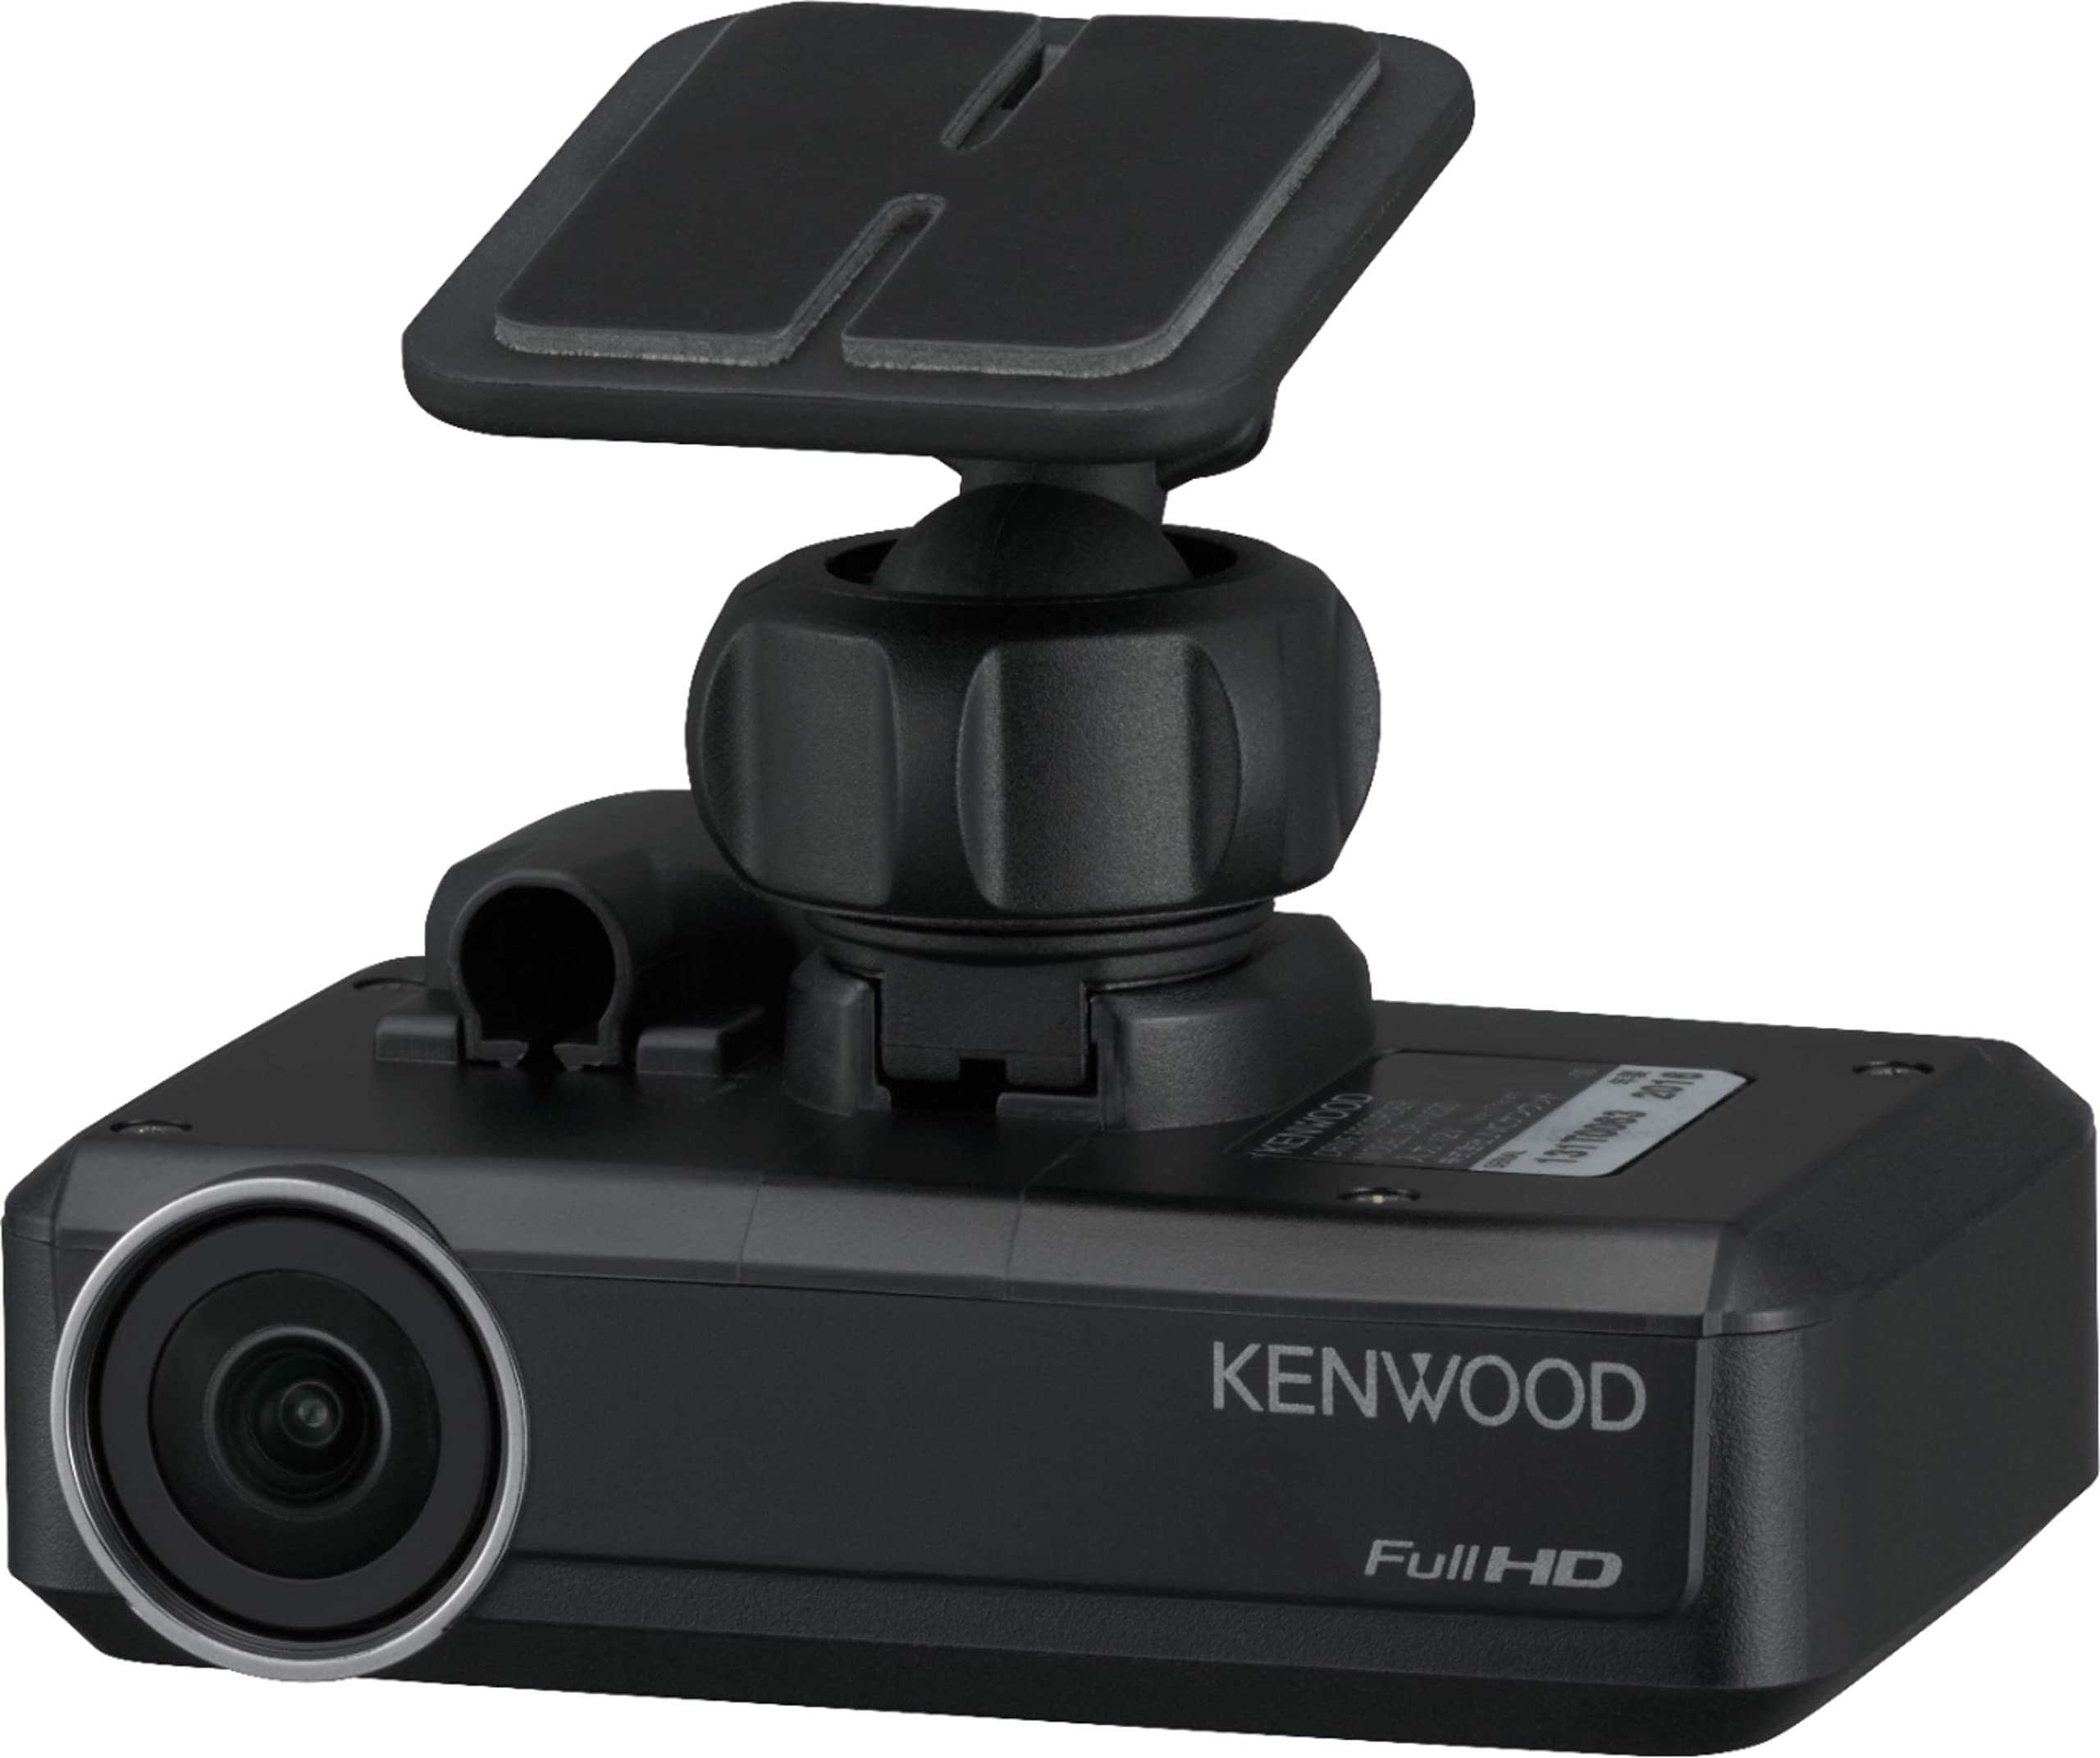 KENWOOD DRV-N520 블랙박스